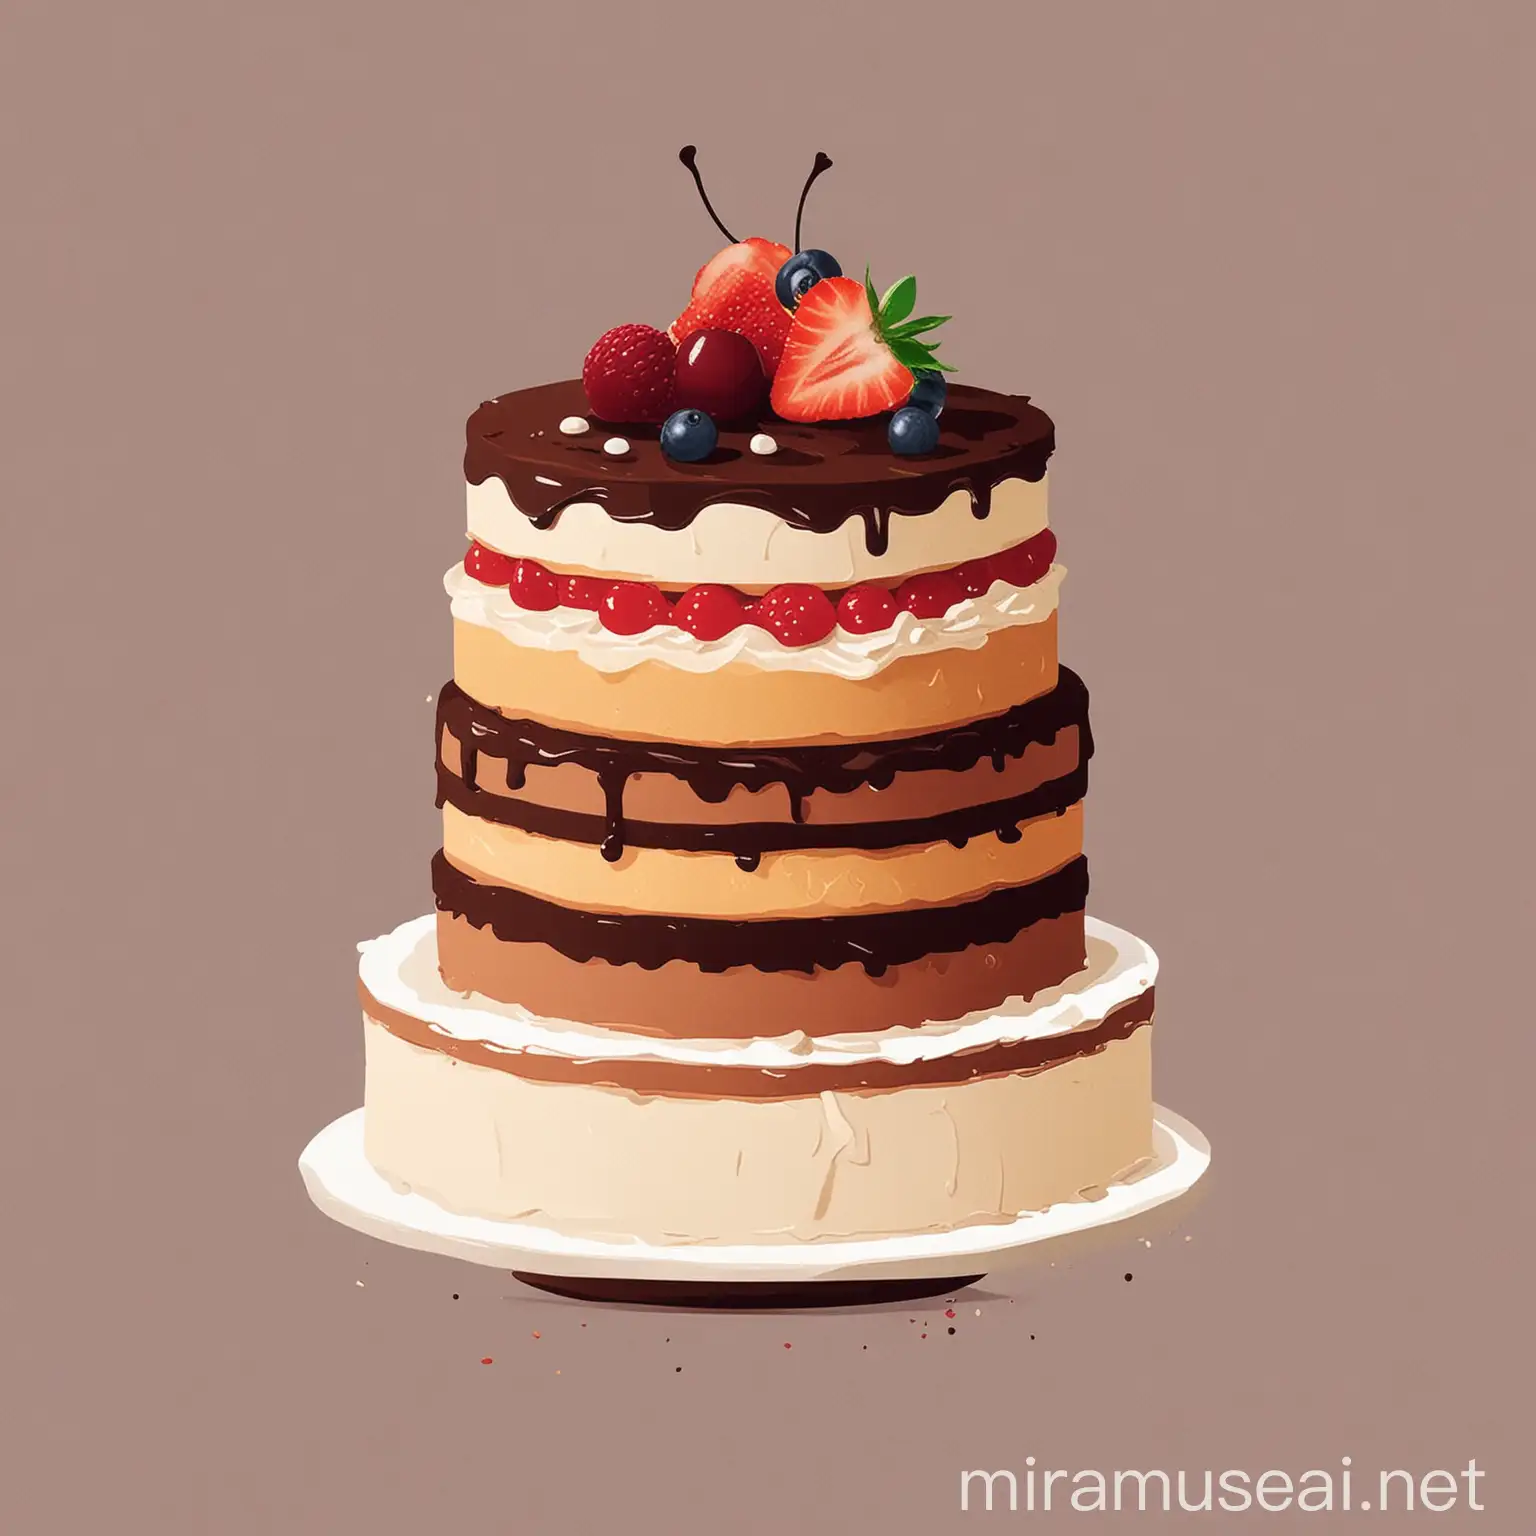 Minimal Illustration of ThreeLayer Cake Simple and Elegant Dessert Art